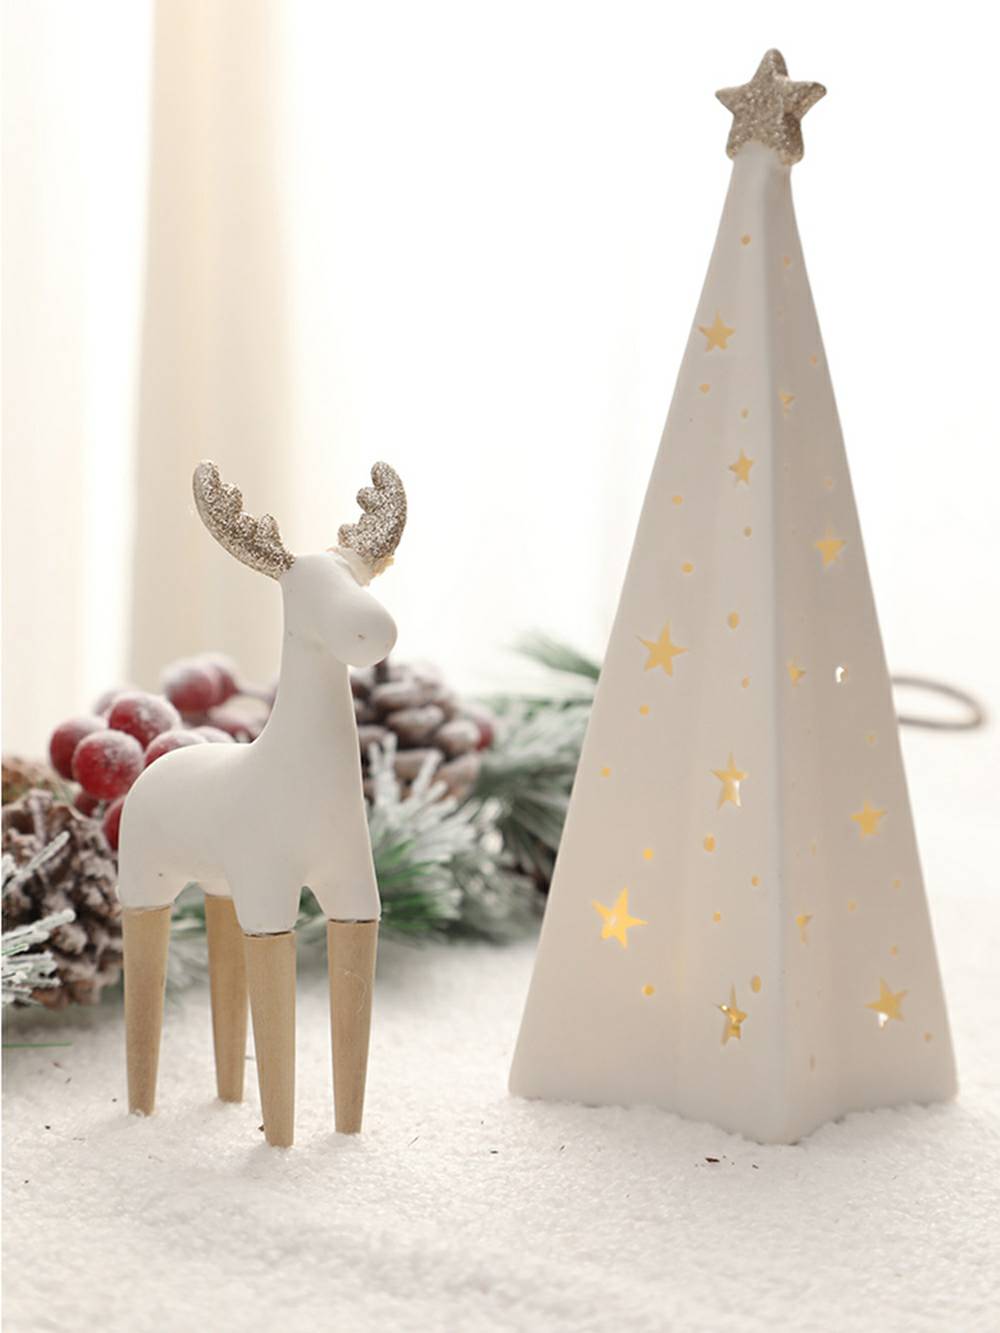 Decoração de Natal iluminada com boneco de neve e renas de cerâmica